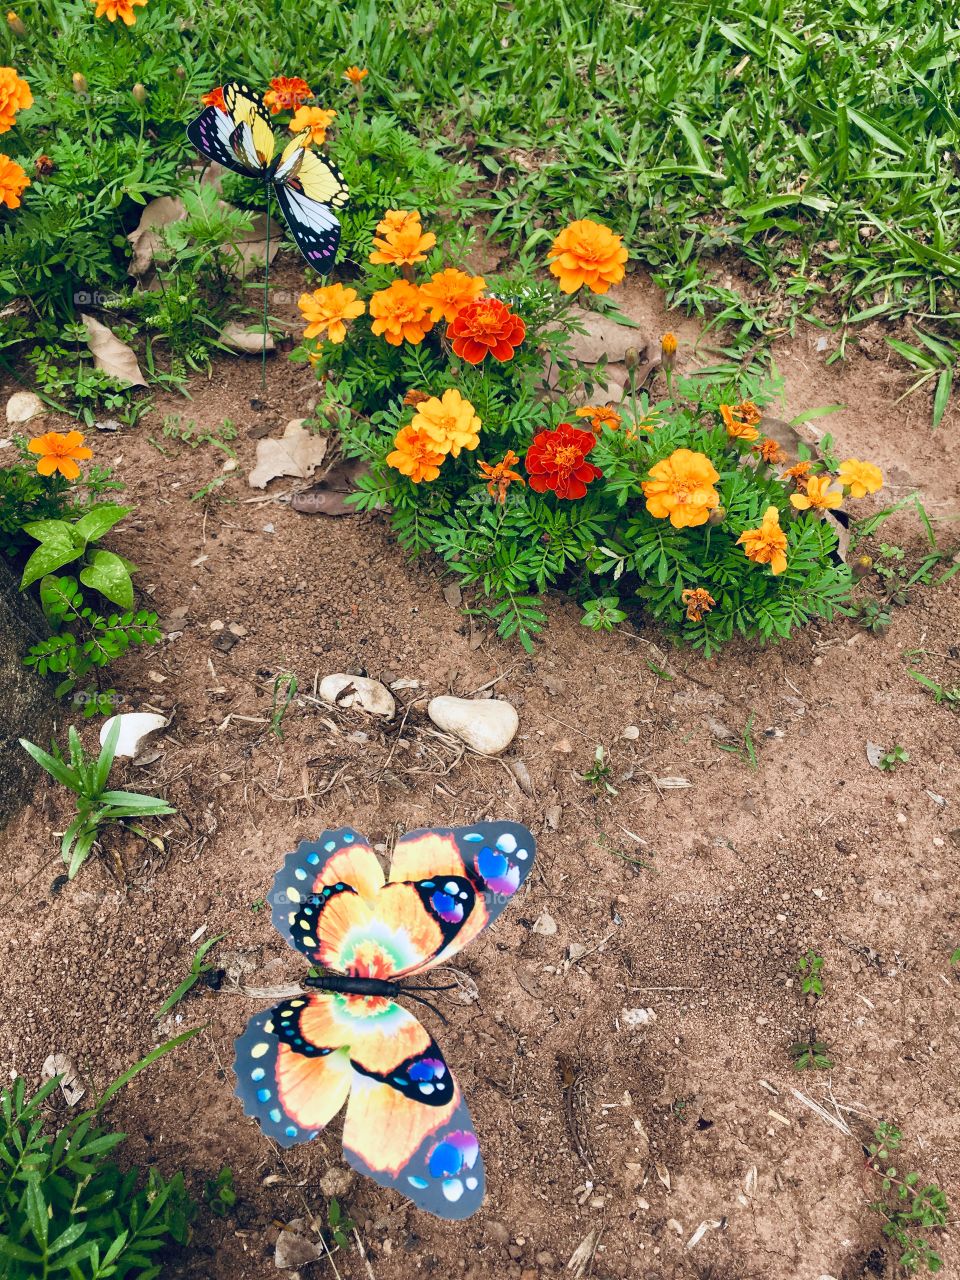 Flores belíssimas do jardim. Gostaram da borboleta em meio as pétalas? Viva a Natureza!